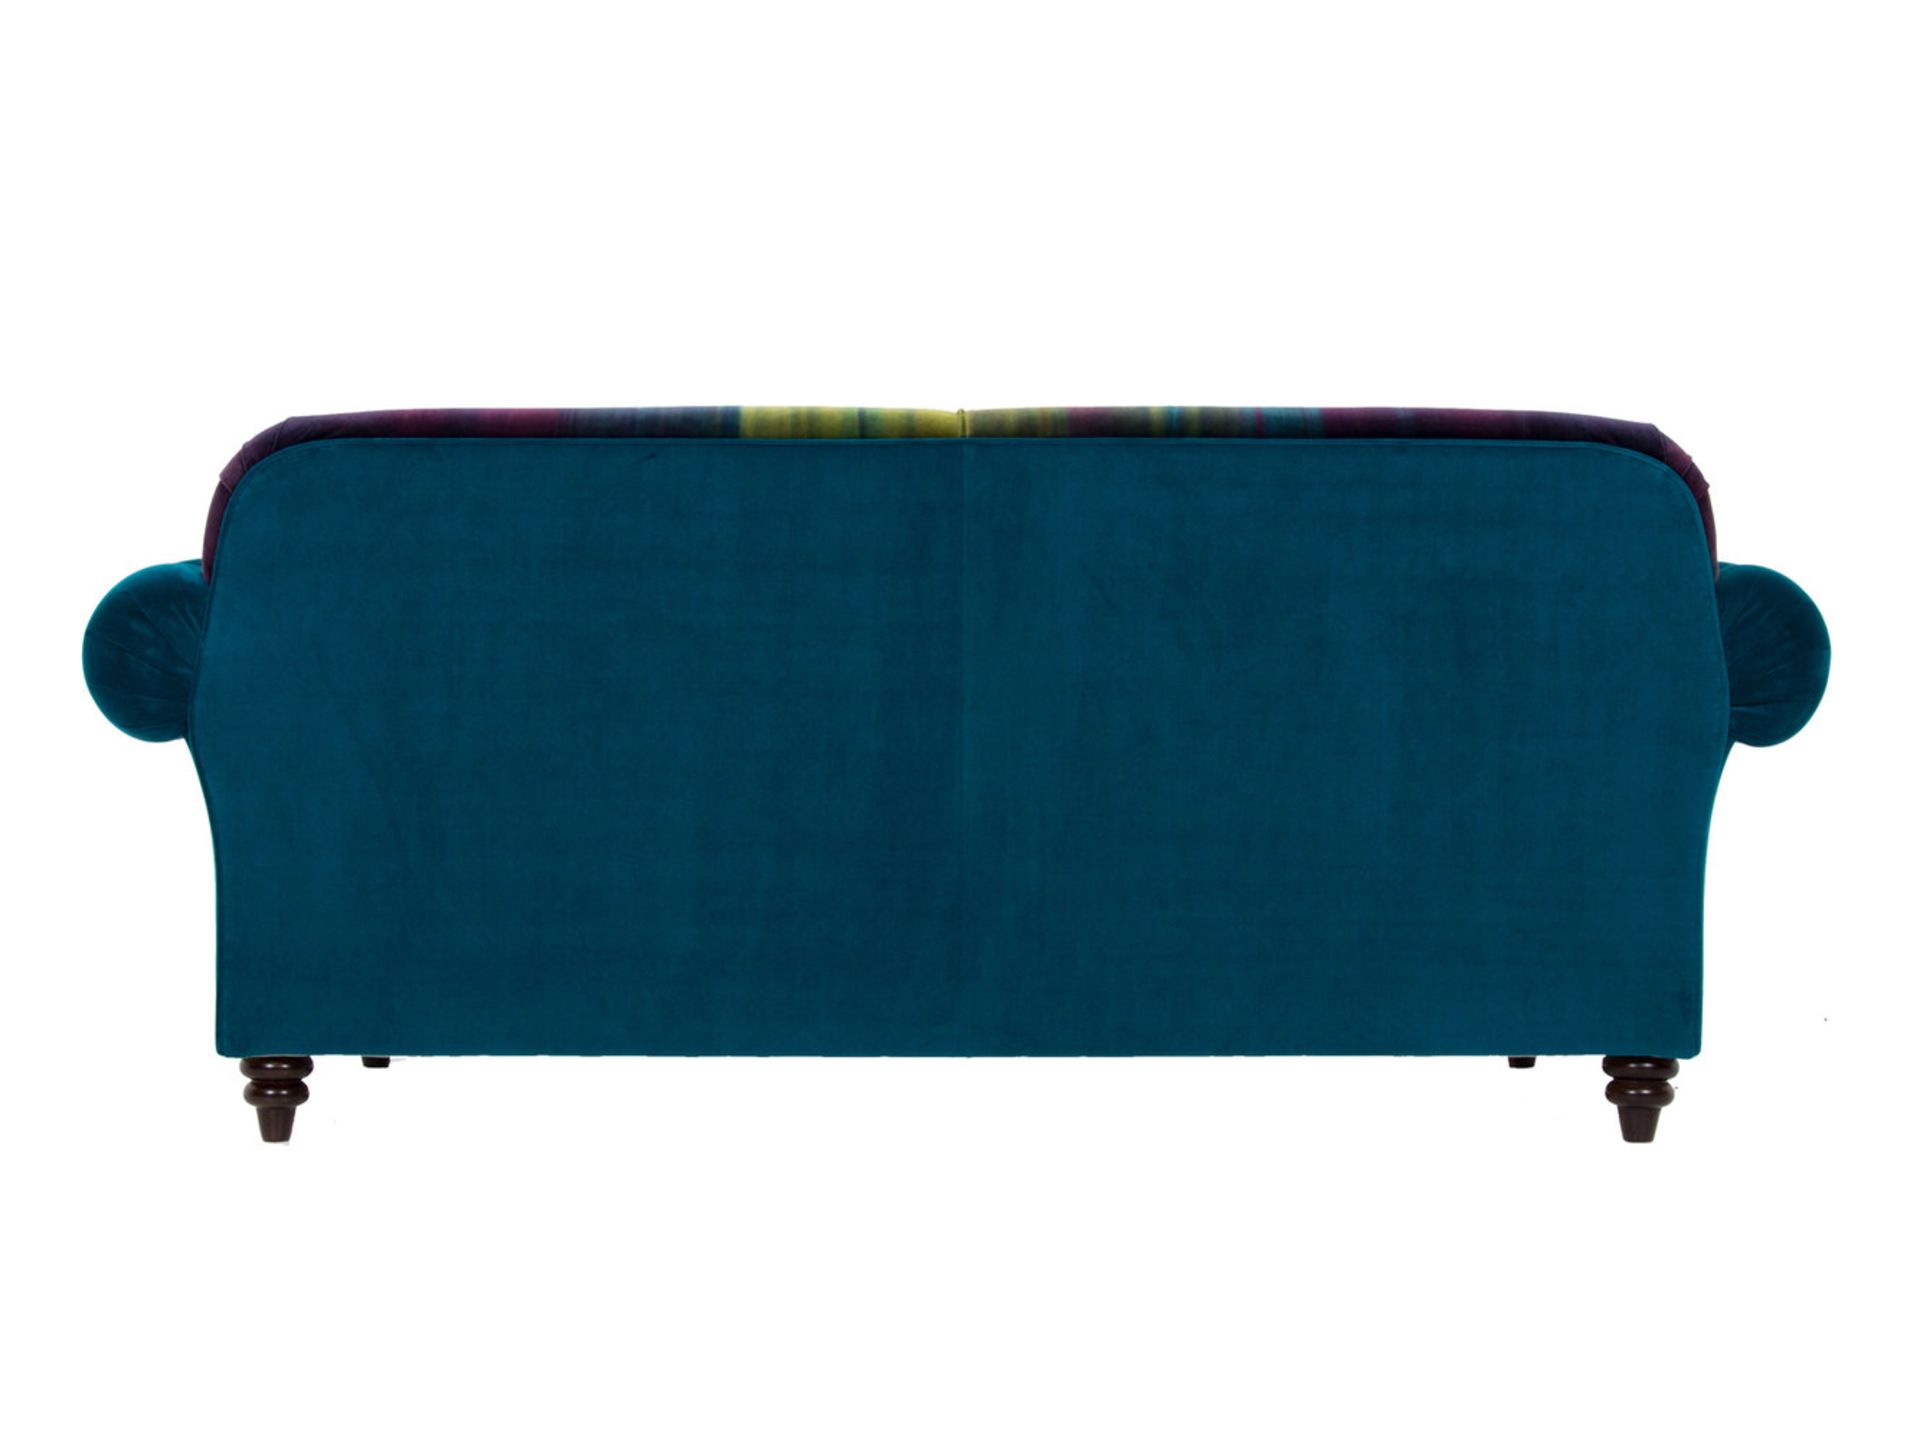 1 x Lytton Mallard Sofa Upholstered in Harlequin Velvet Fabric - RRP £1,259! - Image 7 of 7